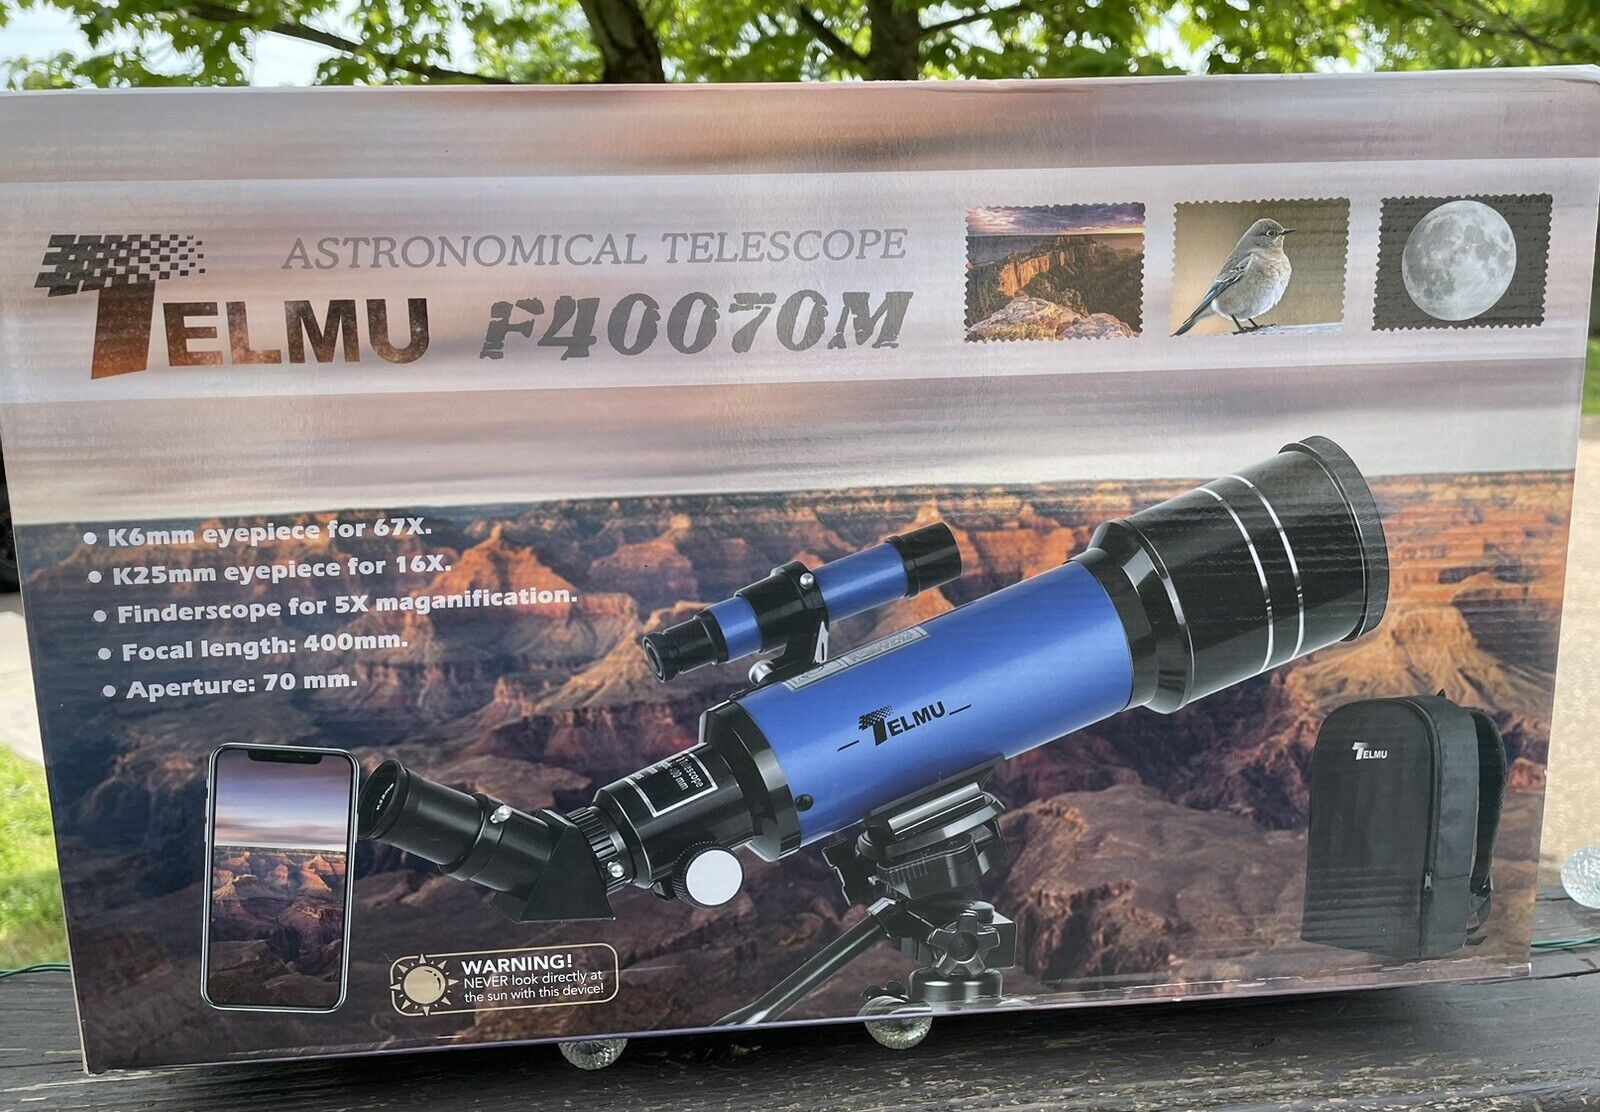 Telmu F40070M Astronomical Telescope W/backpack Aperature 70mm